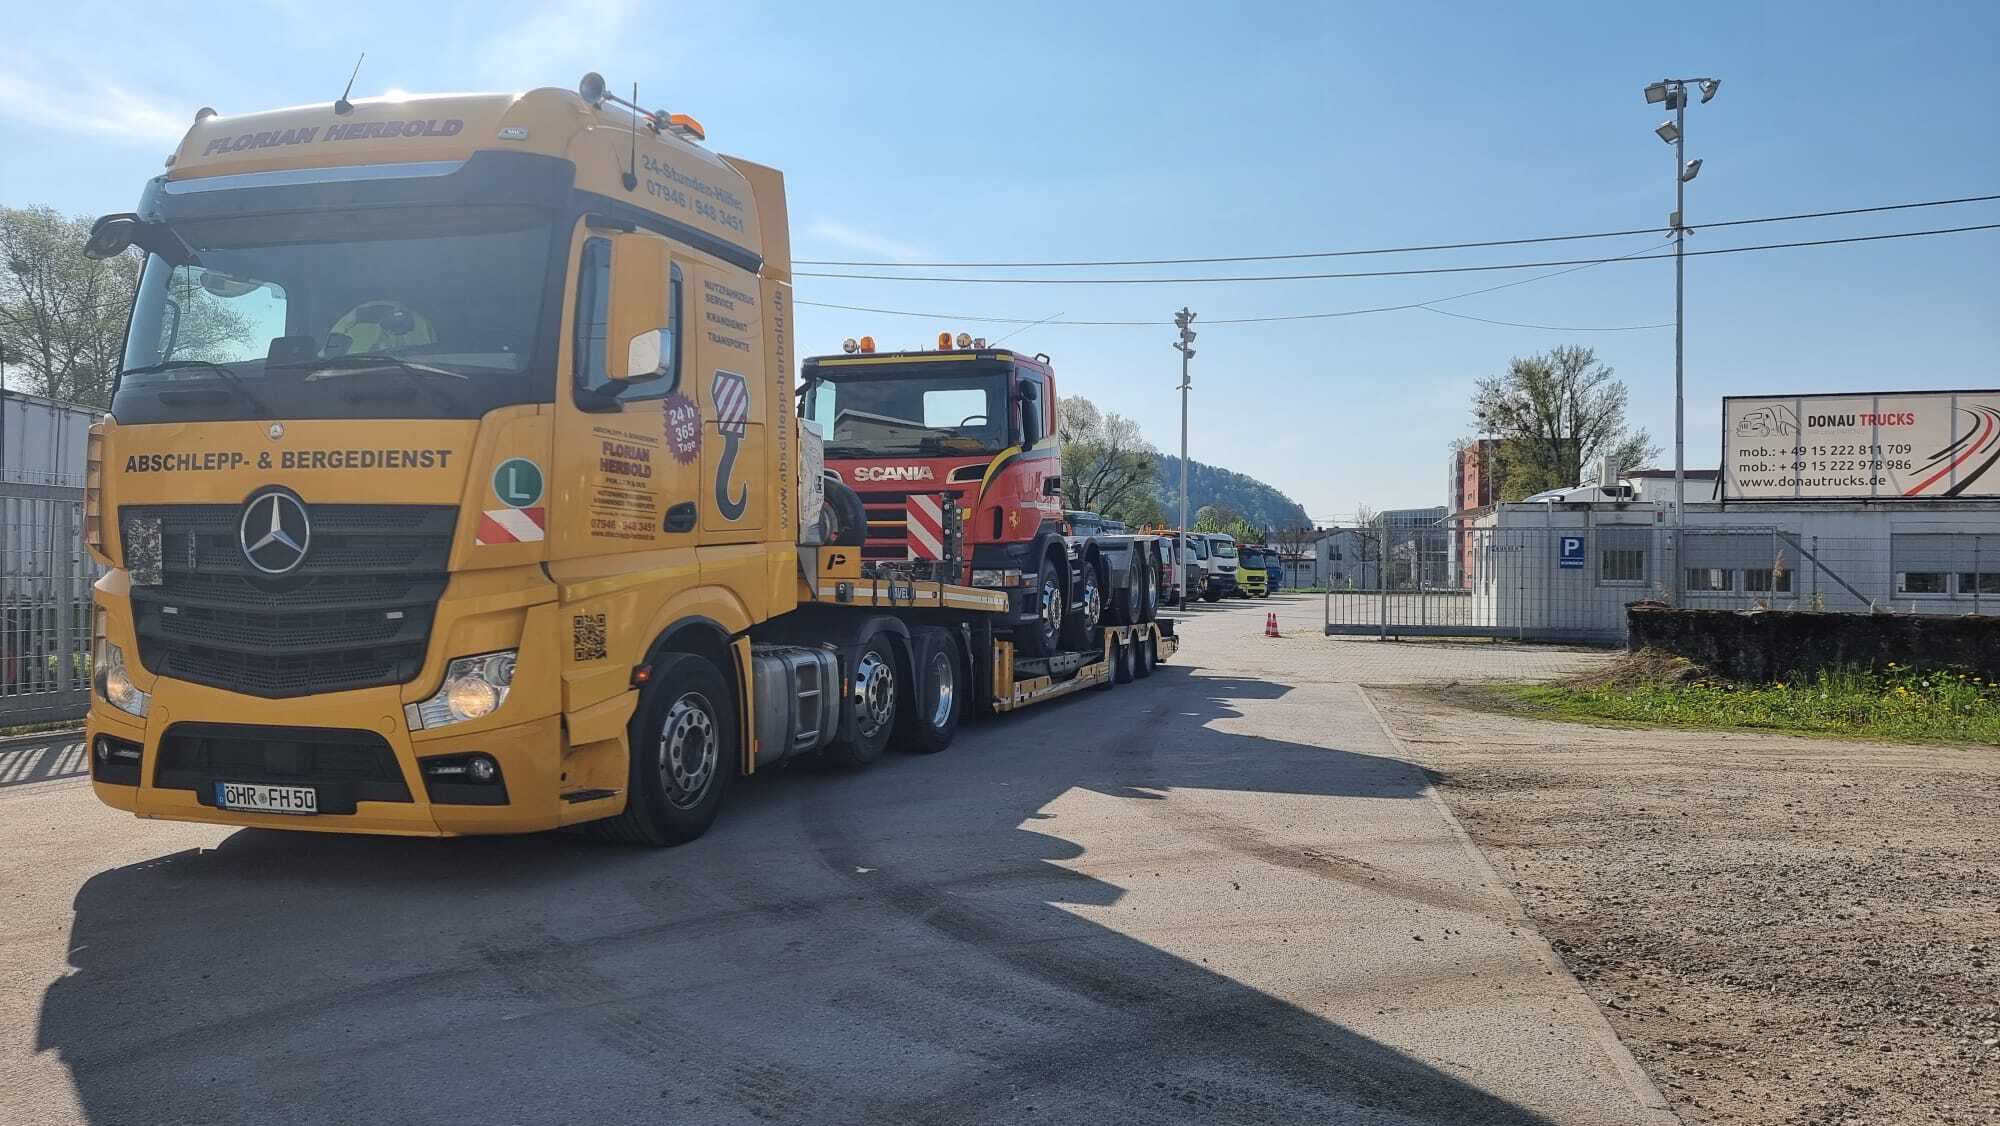 Donau Trucks GmbH undefined: billede 4